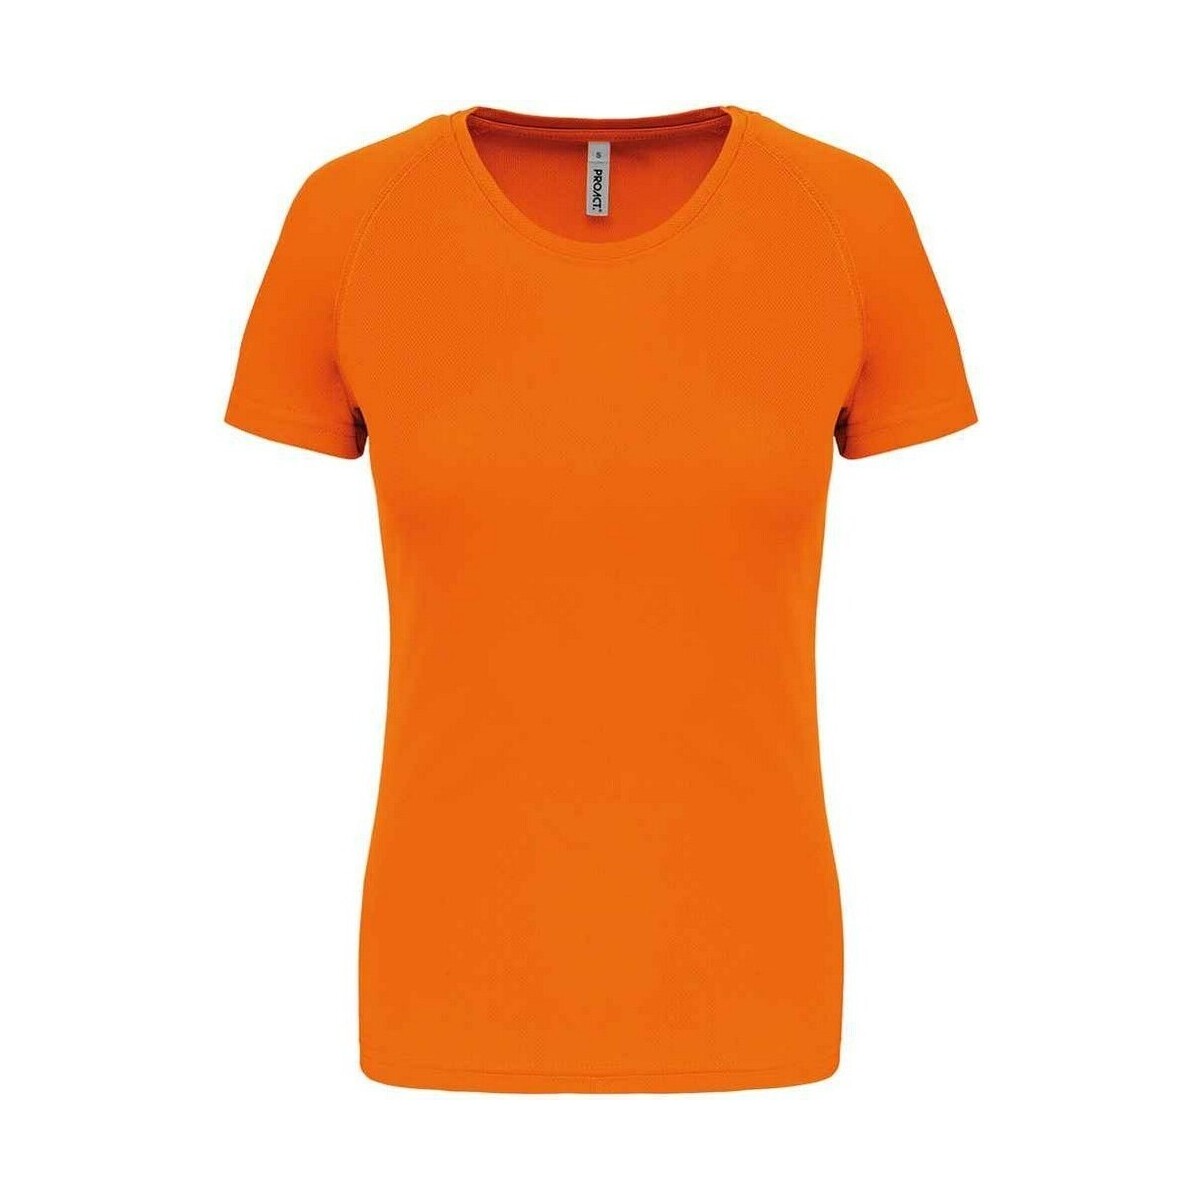 textil Mujer Camisetas manga larga Proact PC6776 Naranja